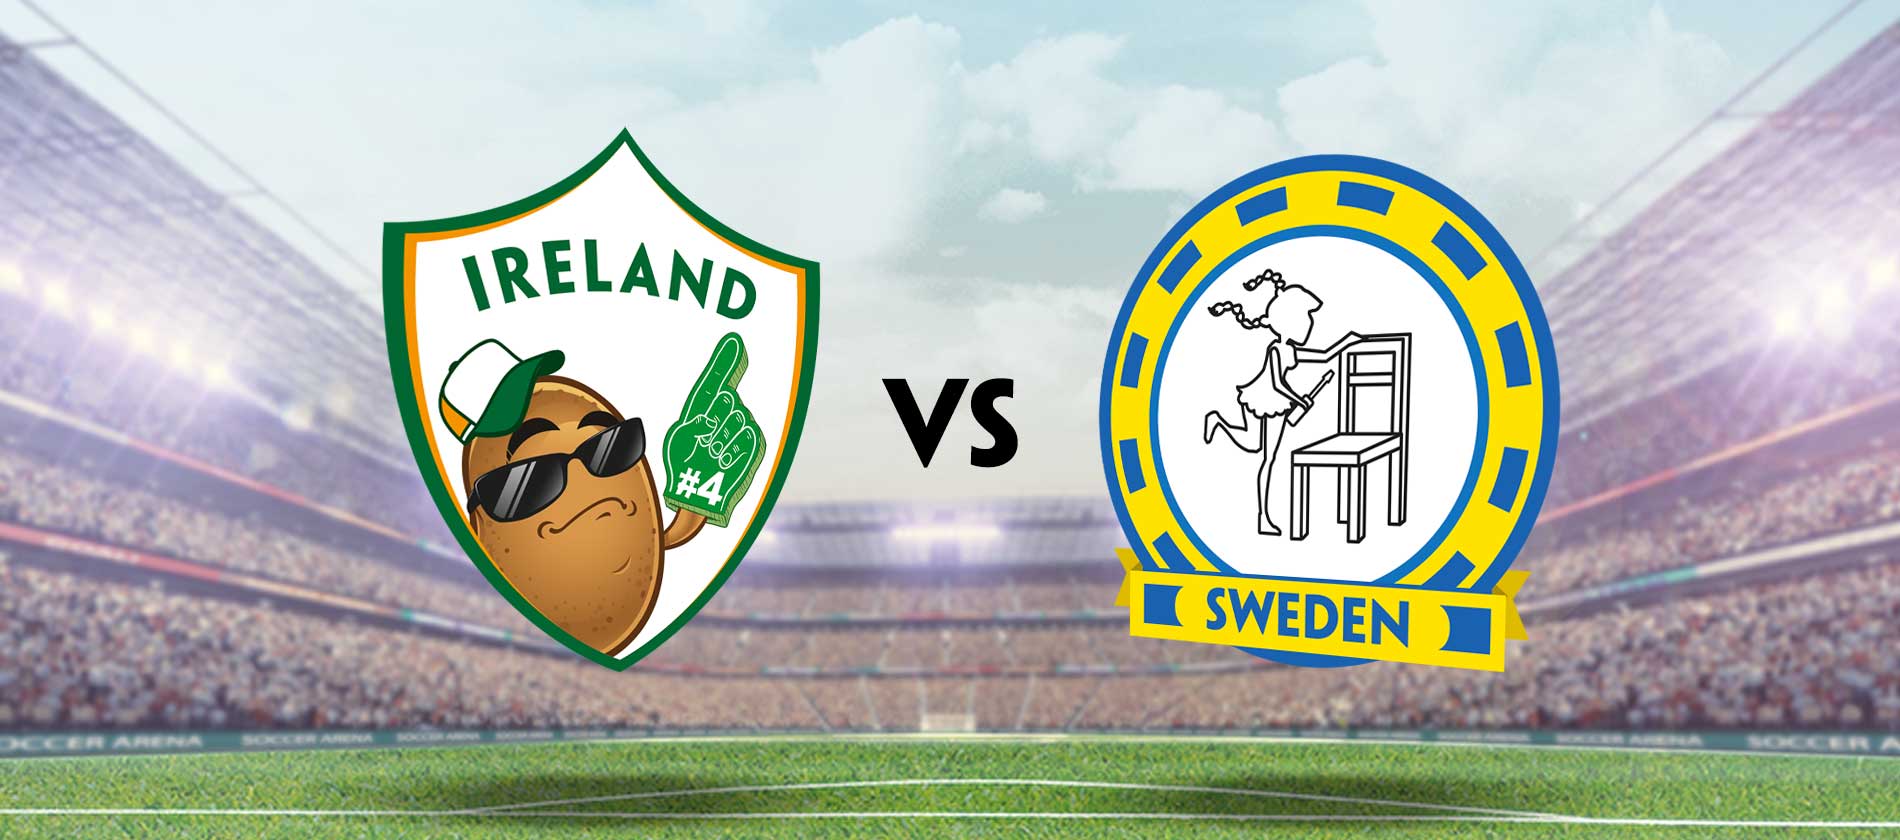 Ireland vs Sweden